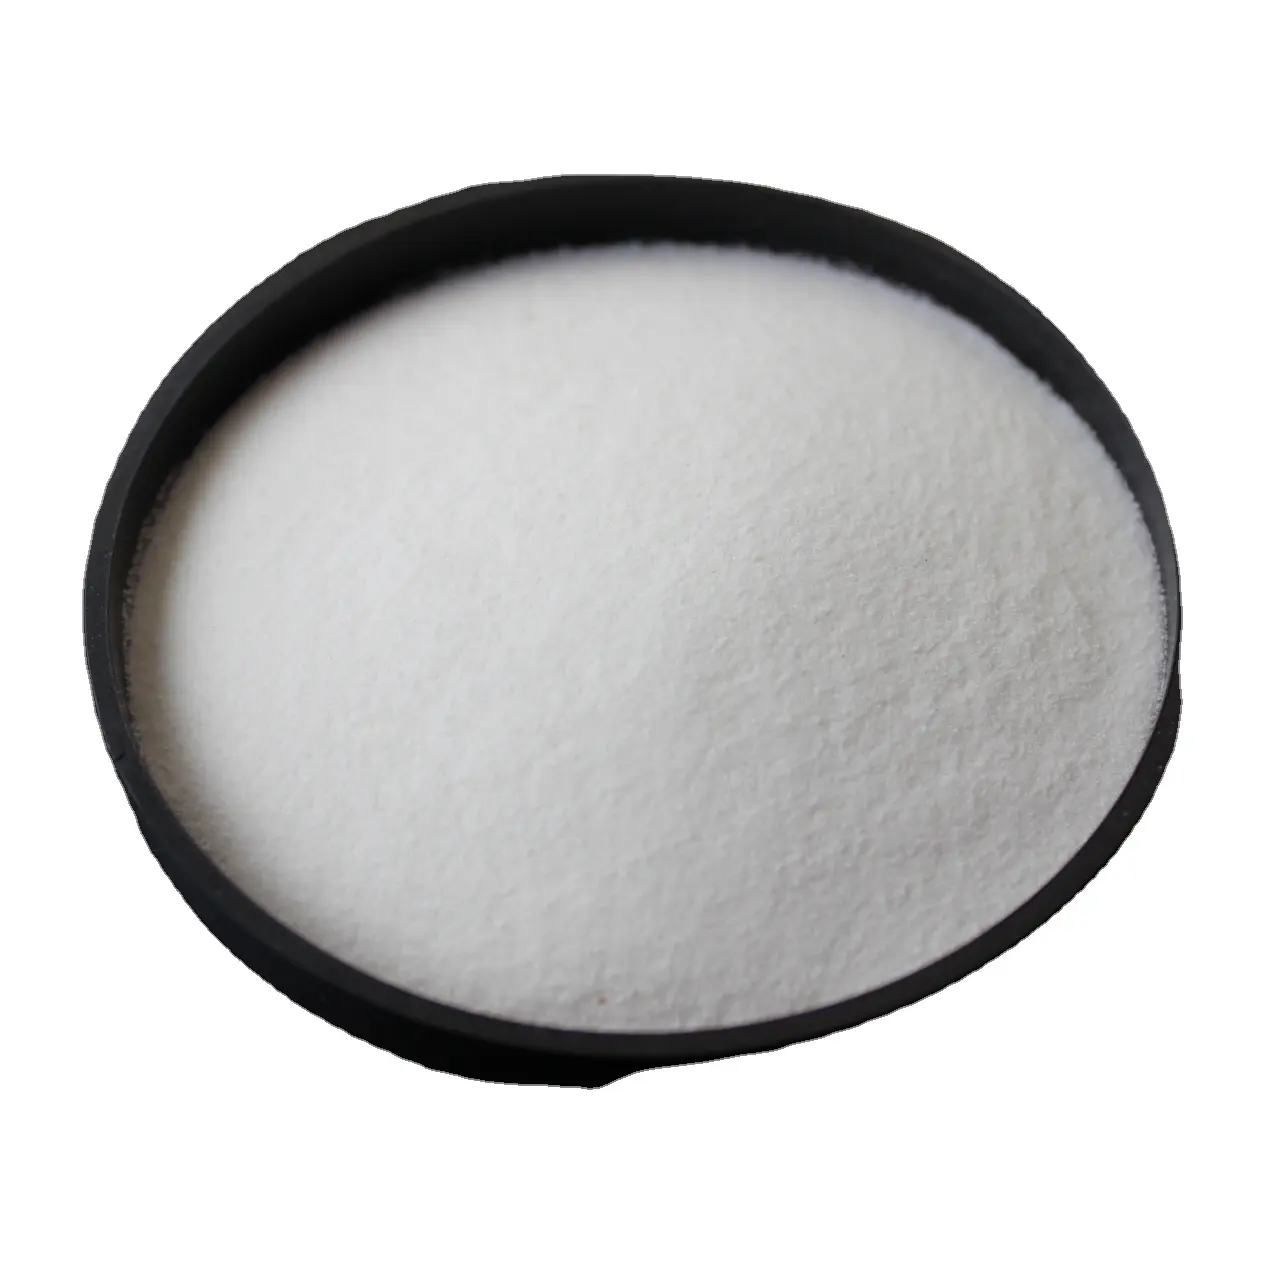 Esametafosfato di sodio utilizzato come agente testurizzante; Emulsionanti; Stabilizzante; Agente chelante